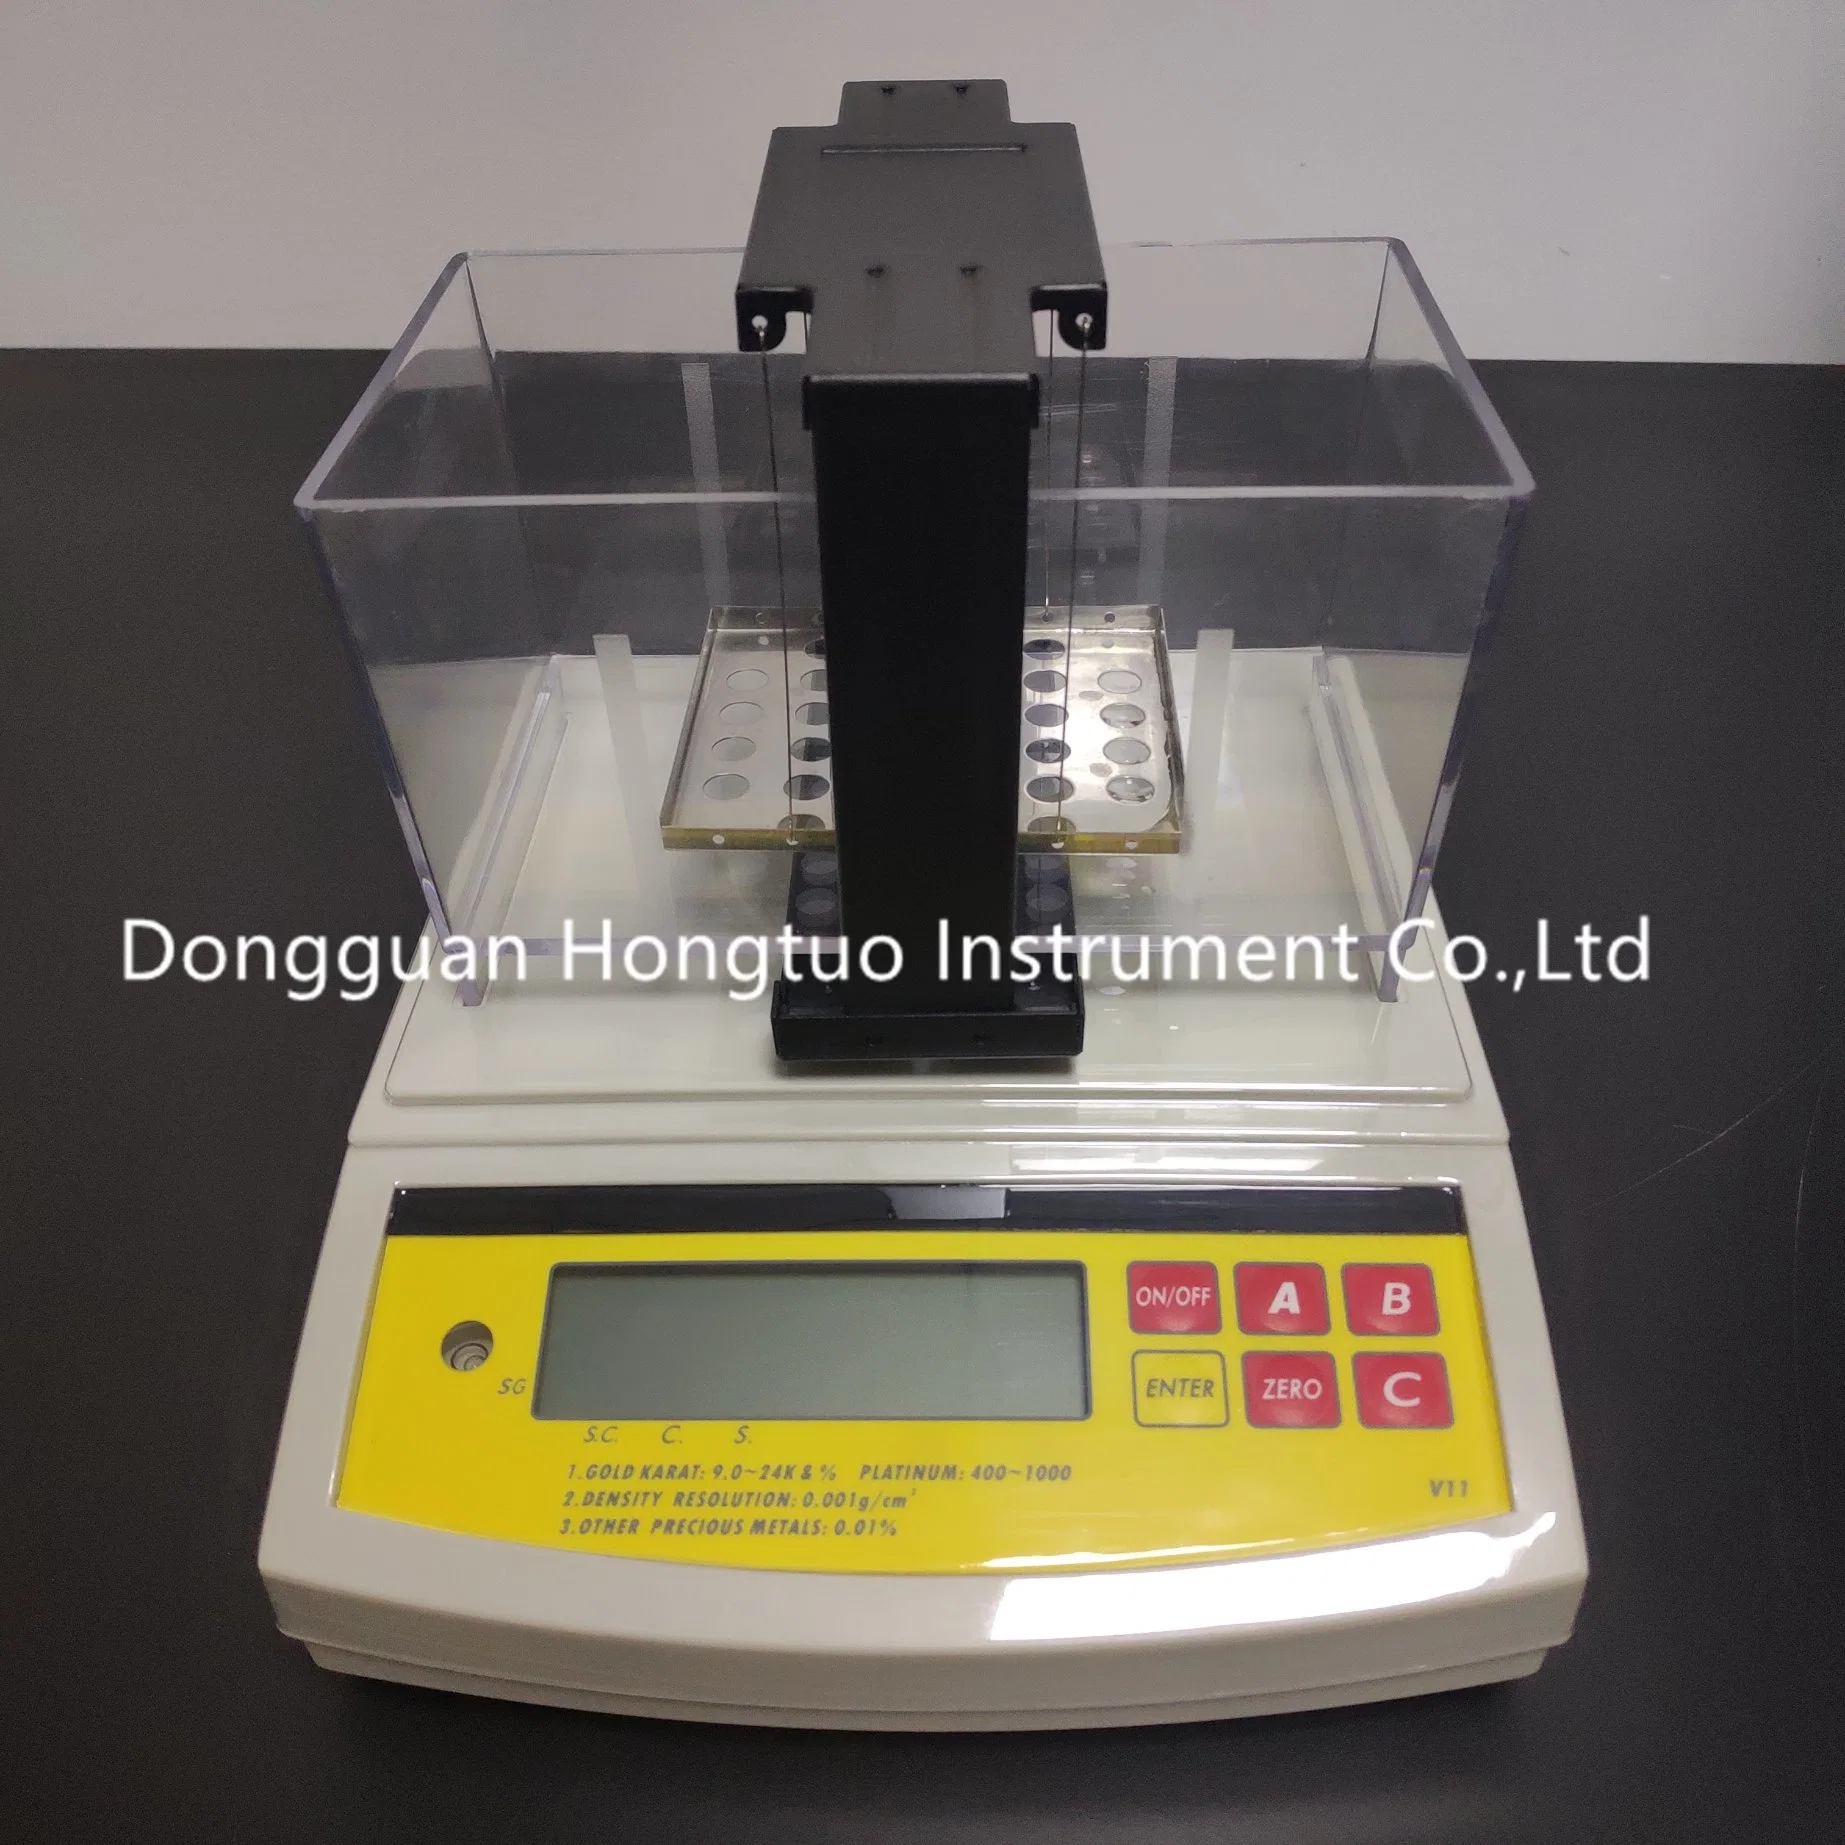 جهاز قياس الذهب الإلكتروني الرقمي De-200K، آلة قياس الكرات الذهبية